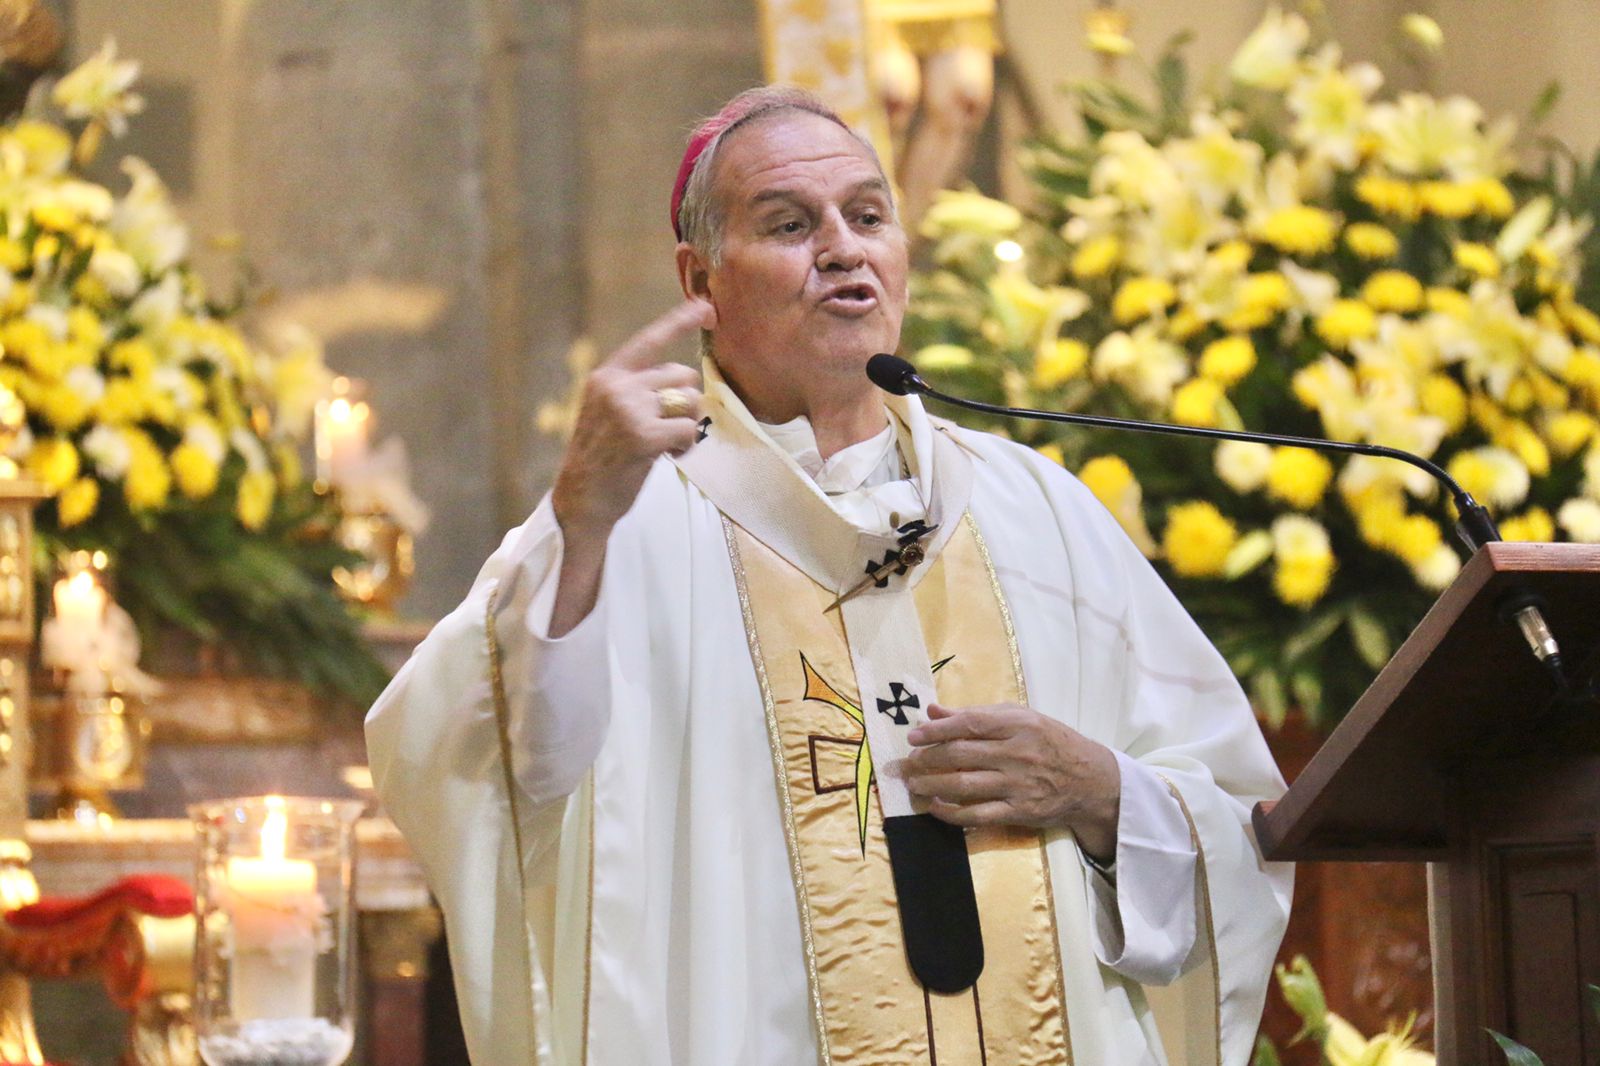 ▶ Pide Arzobispo a patrones y empresarios pagar salarios dignos y justos a trabajadores